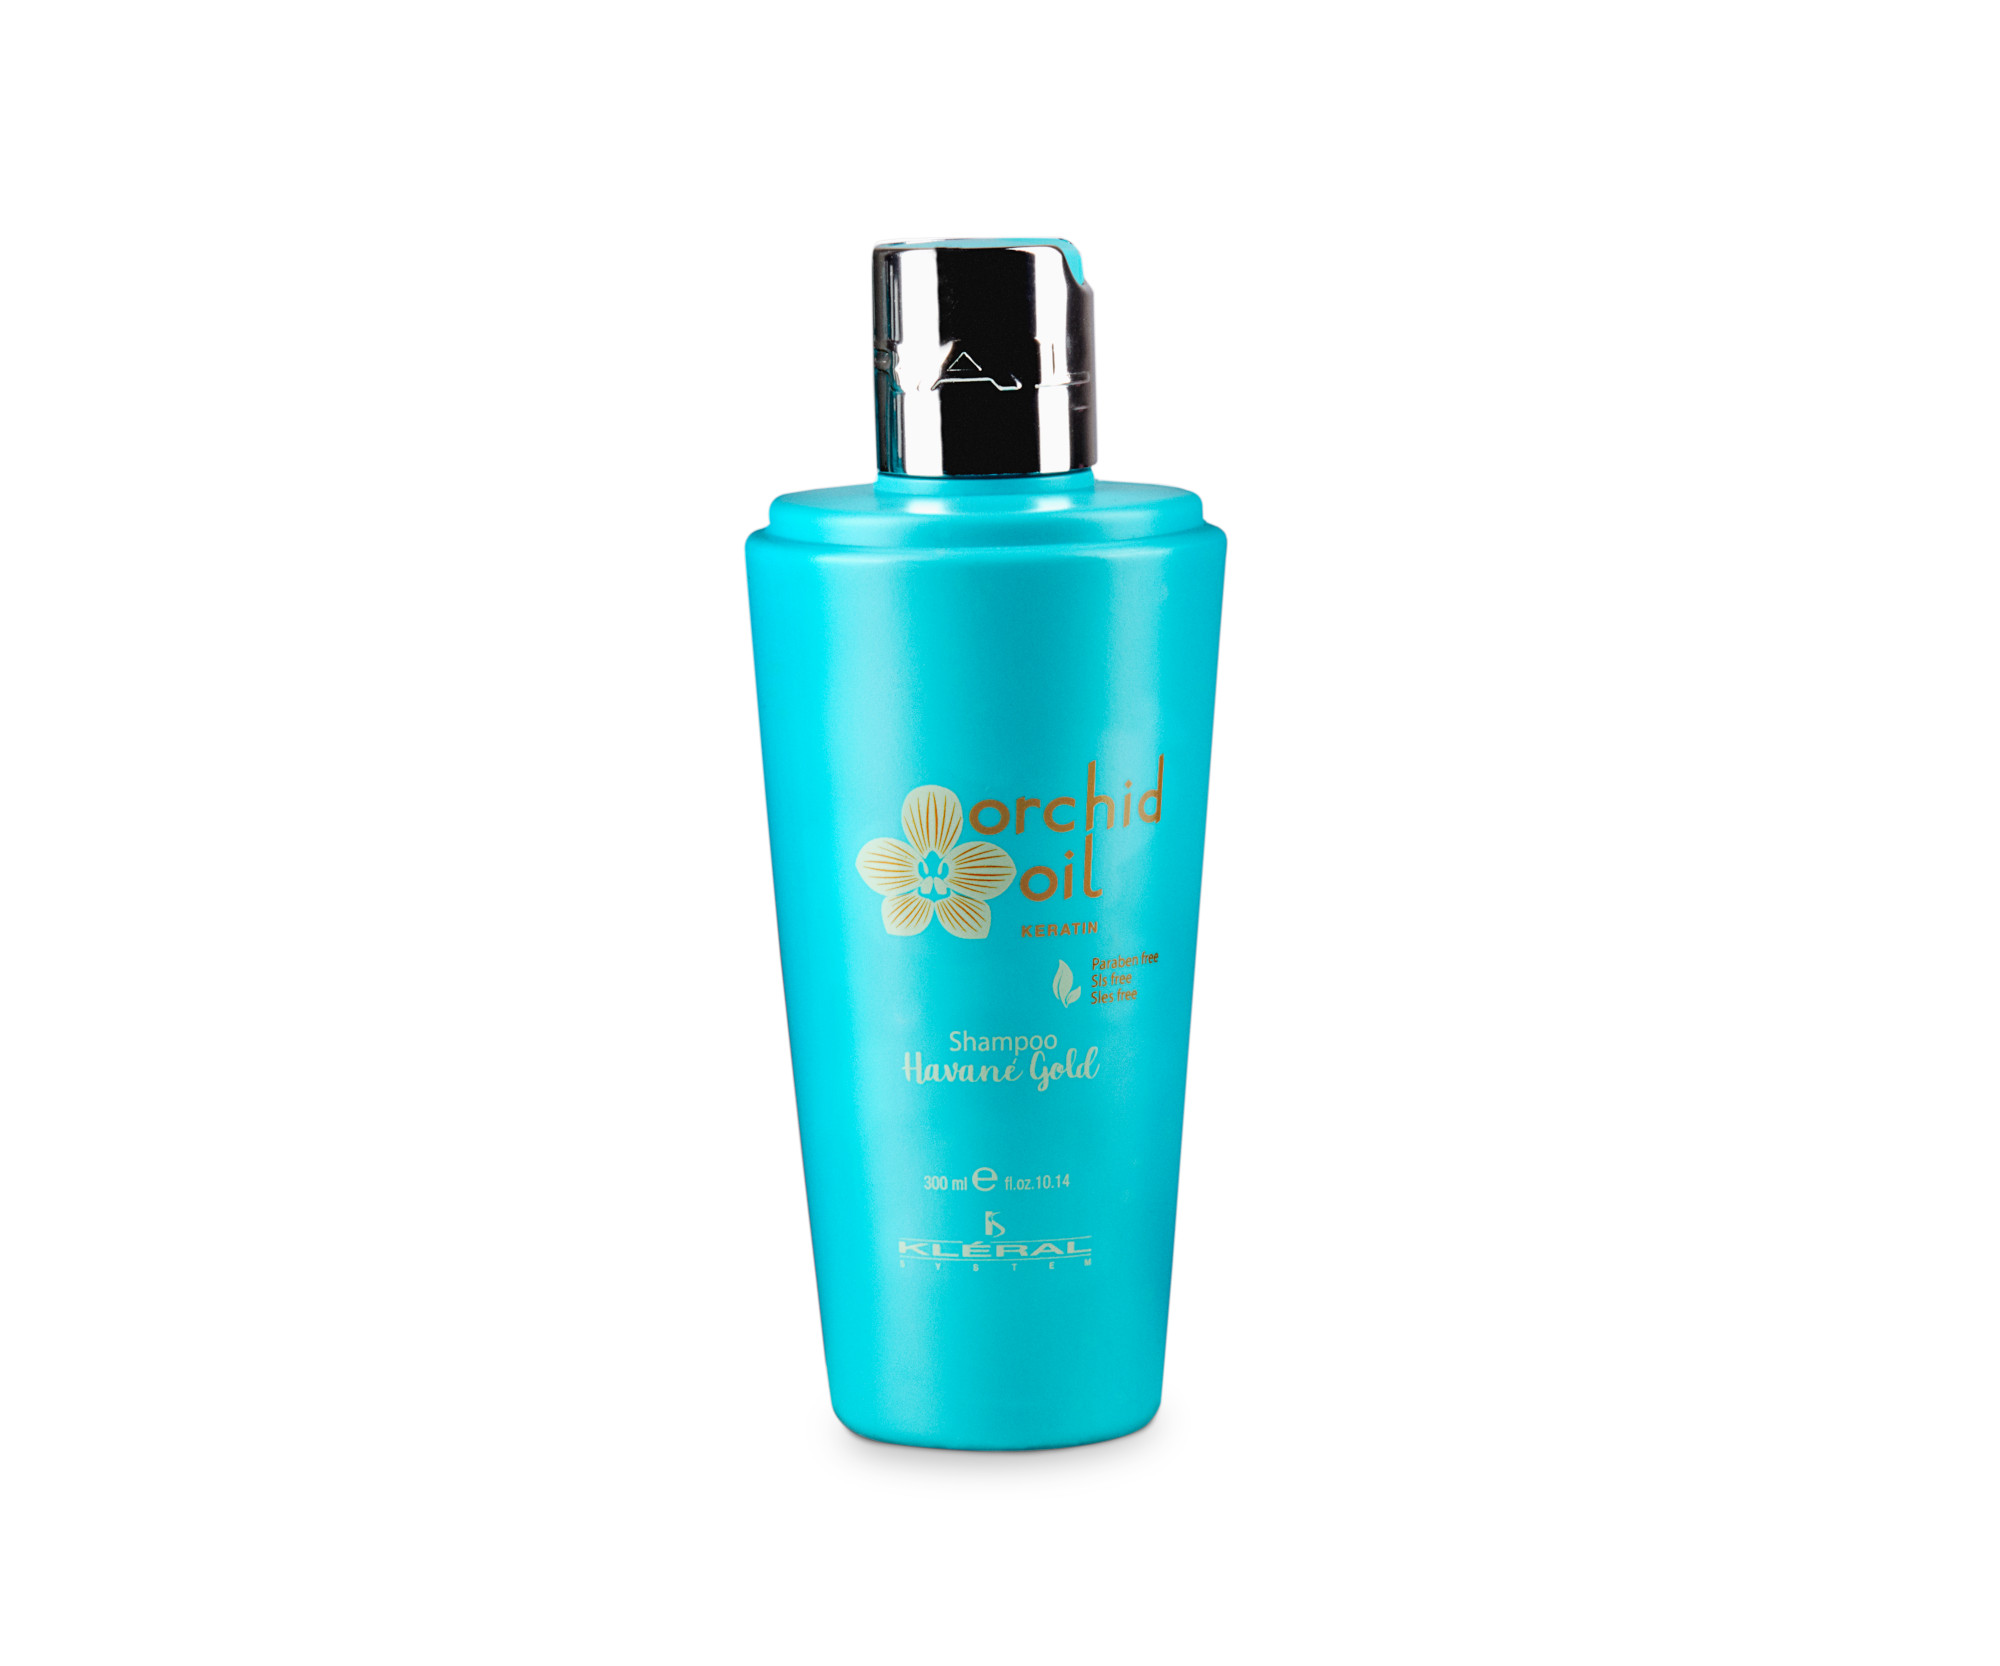 Šampon pro normální vlasy Kléral System Orchid Oil Keratin Havané Gold Shampoo - 300 ml (193) + dárek zdarma